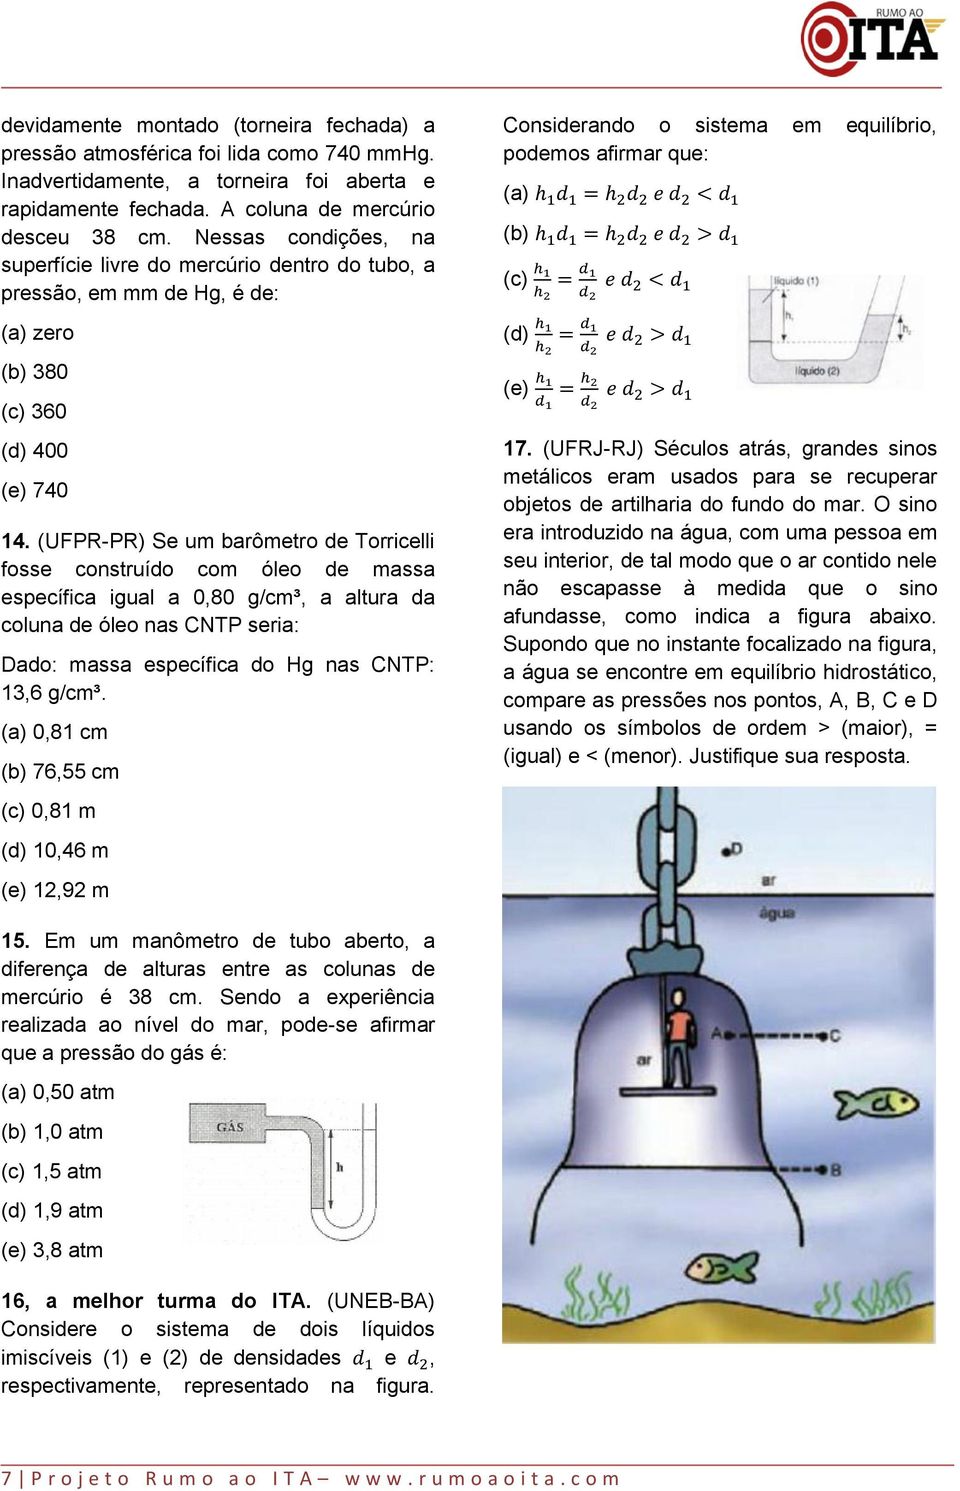 (UFPR-PR) Se um barômetro de Torricelli fosse construído com óleo de massa específica igual a 0,80 g/cm³, a altura da coluna de óleo nas CNTP seria: Dado: massa específica do Hg nas CNTP: 13,6 g/cm³.